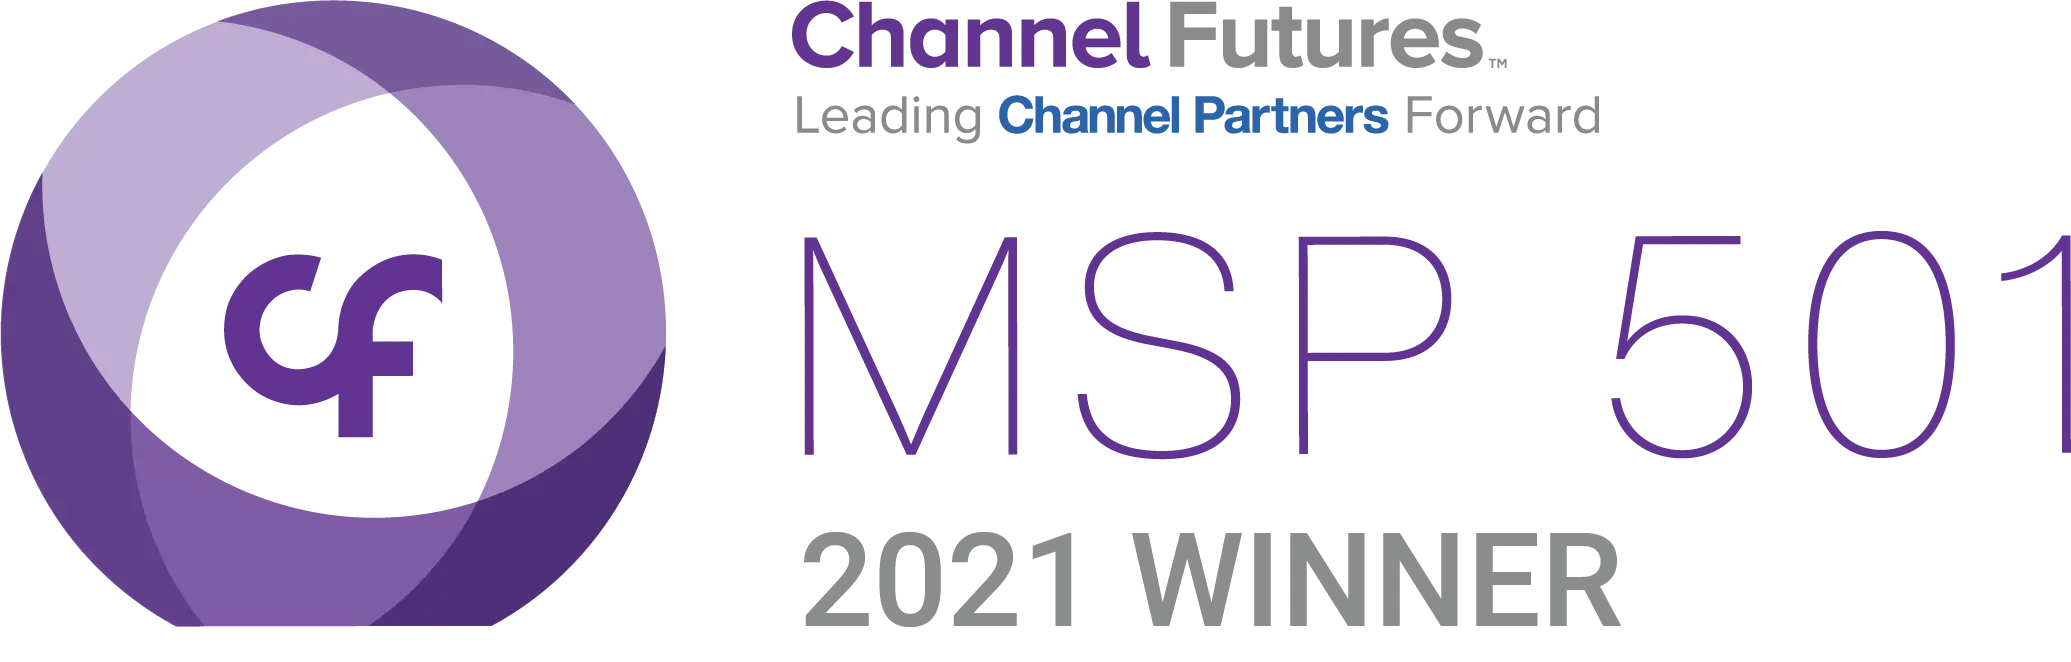 MSP-501-Winner-Logo-2021.png